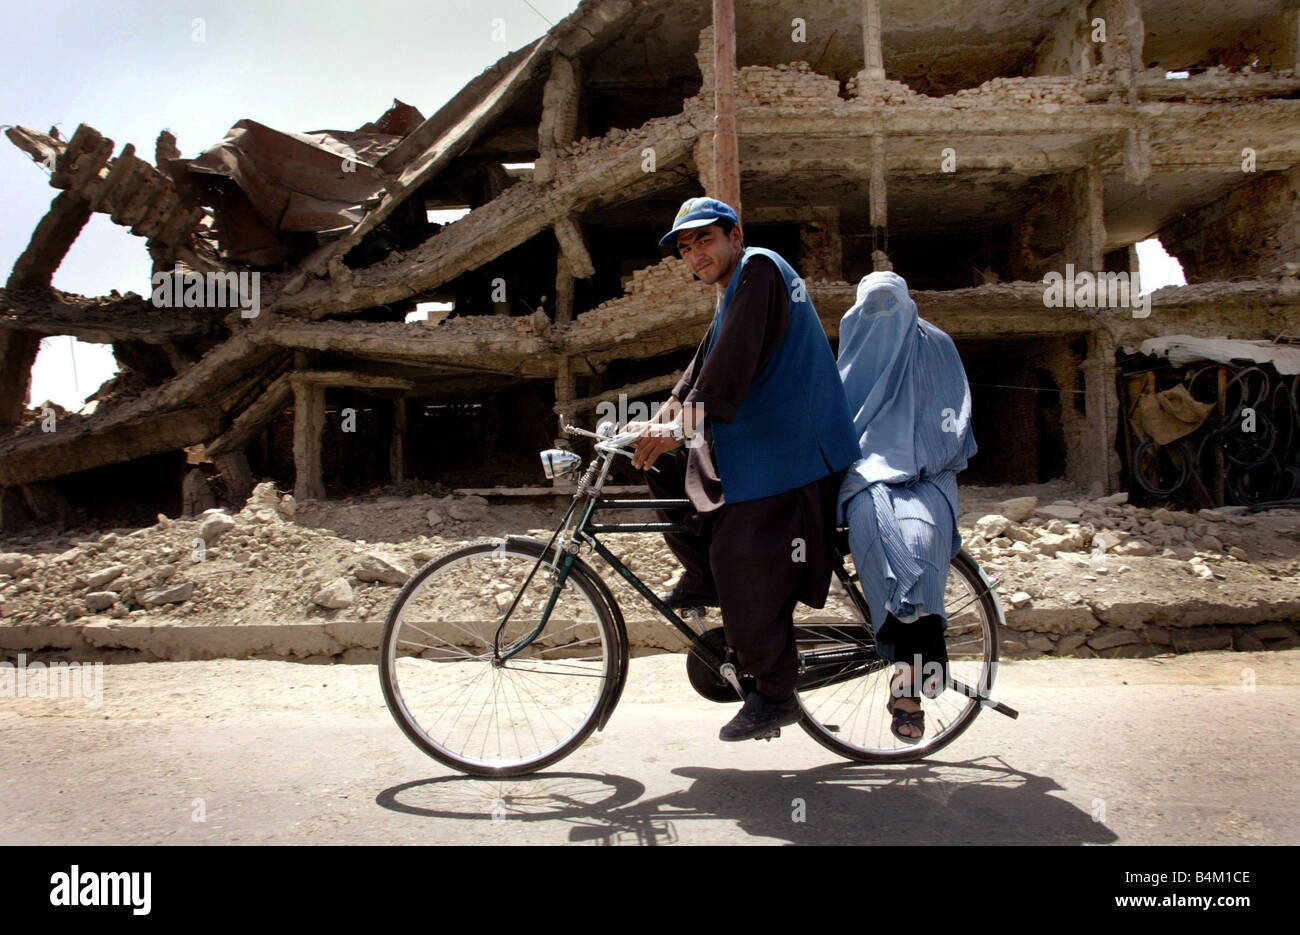 A un anno dalla Sept xi la vita in prima linea nel distretto di Kabul di Kart e Char che era la frontline quando la lotta era al suo apice la gente cerca di sopravvivere e di ricostruire le abitazioni dalle macerie la nostra immagine mostra un marito e moglie fanno modo in passato la distruzione Foto Stock